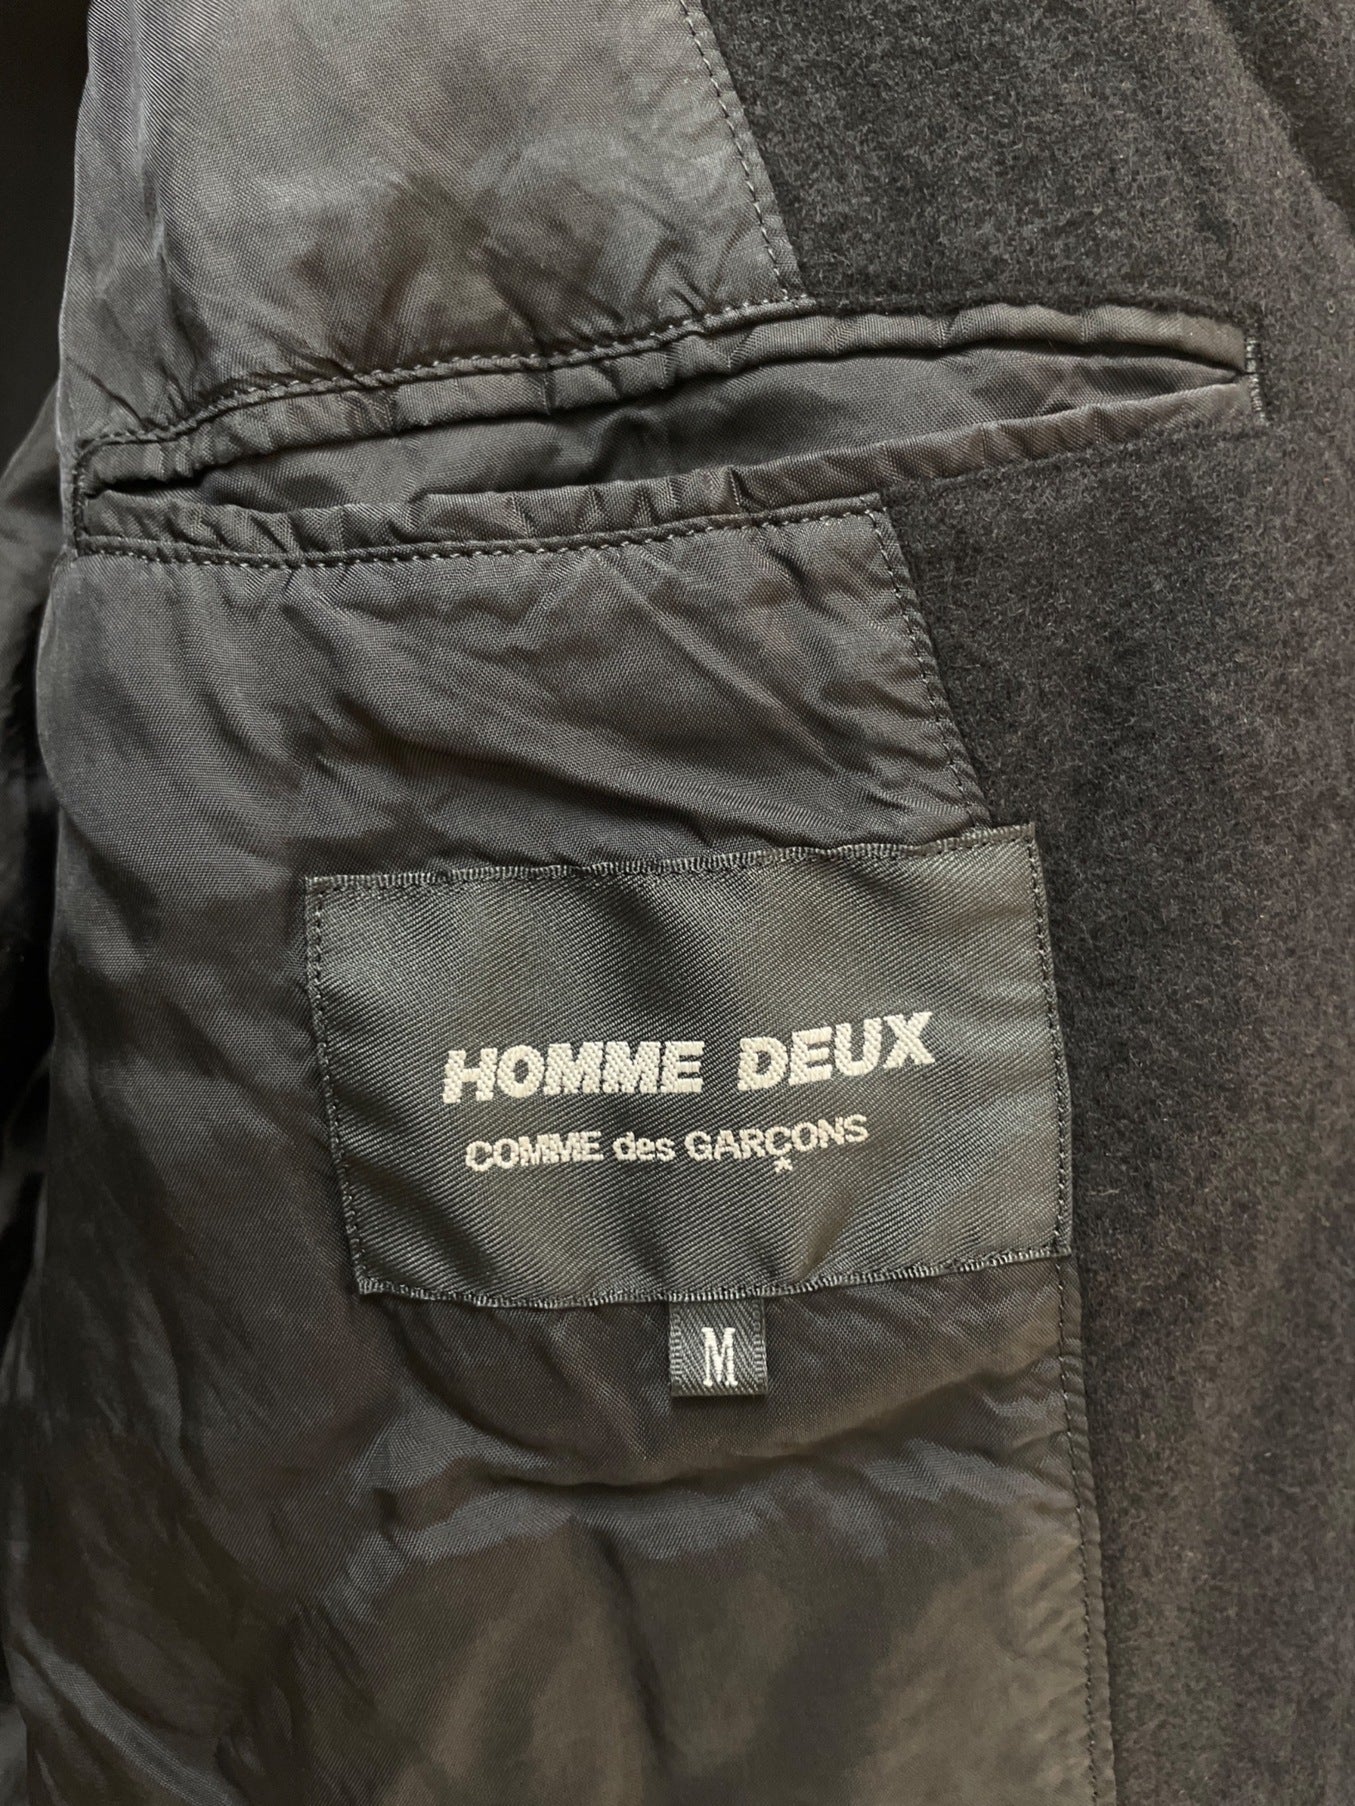 Comme des Garcons Homme Deux Wool ผลิตภัณฑ์เสร็จแล้วแจ็คเก็ต DD-J050